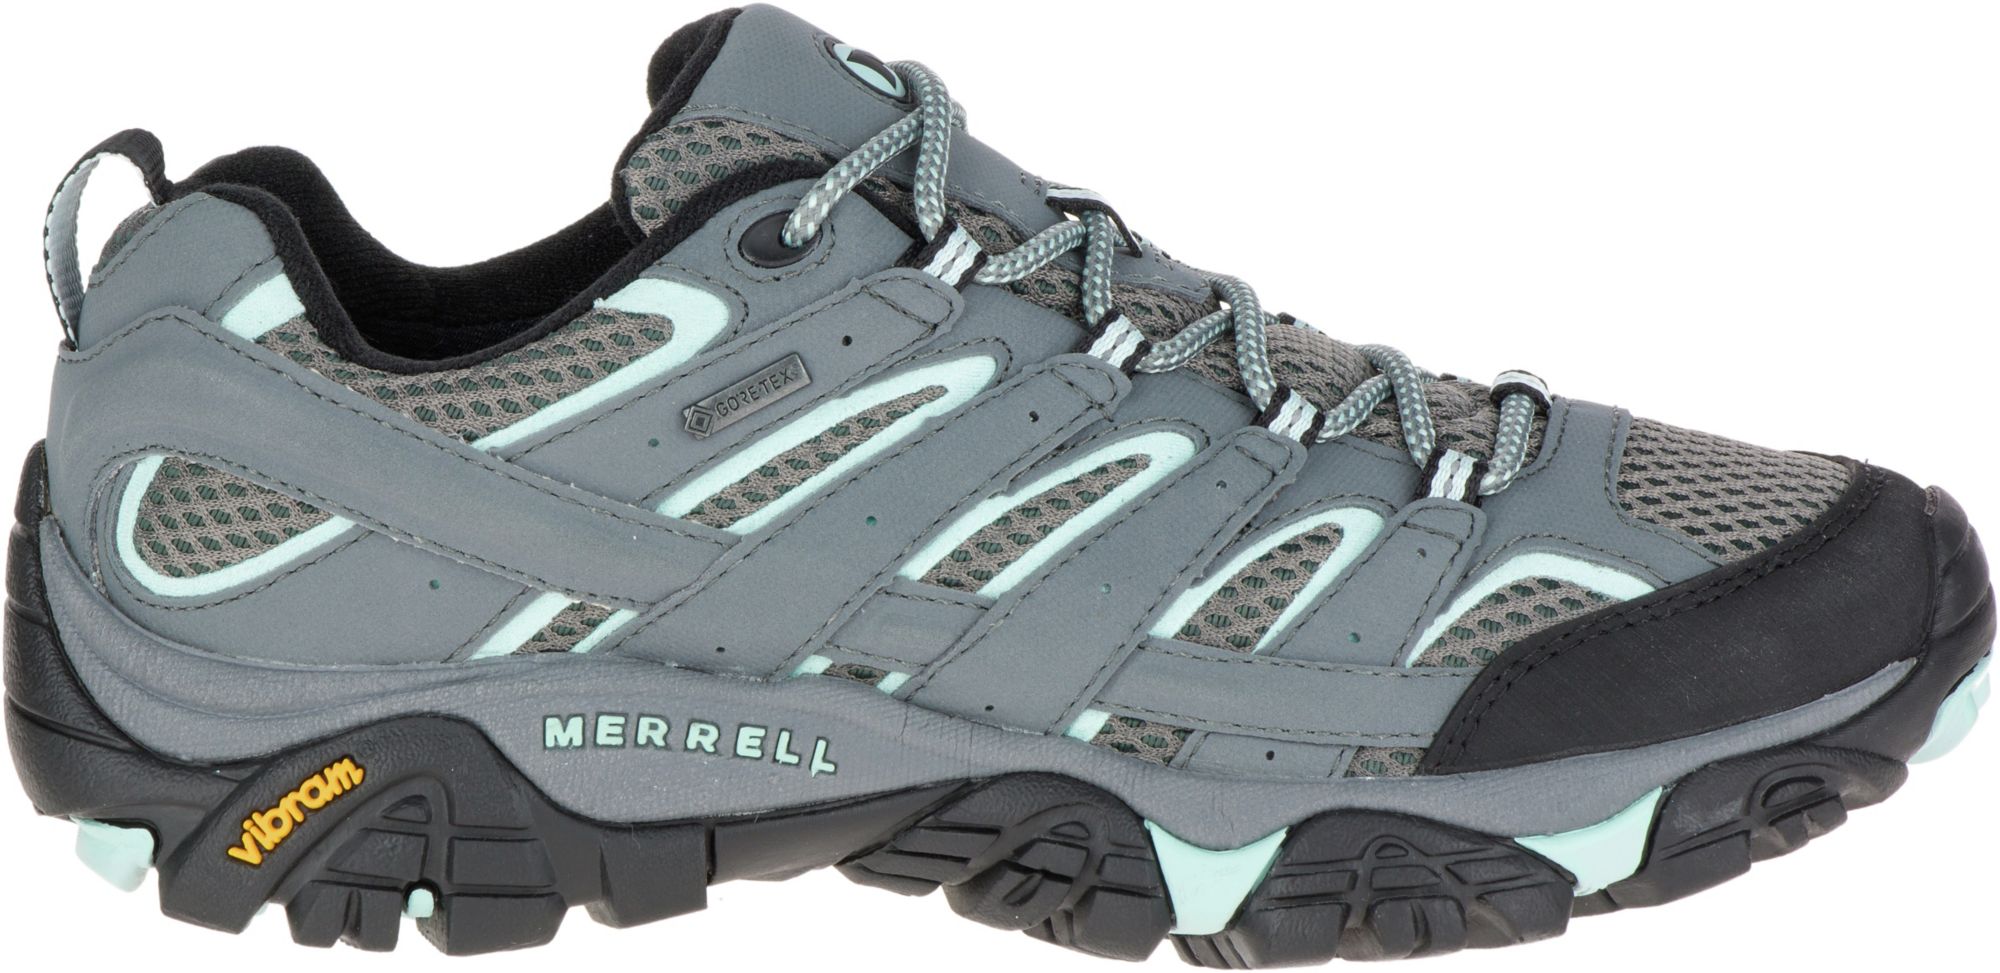 merrell women's tennis shoes